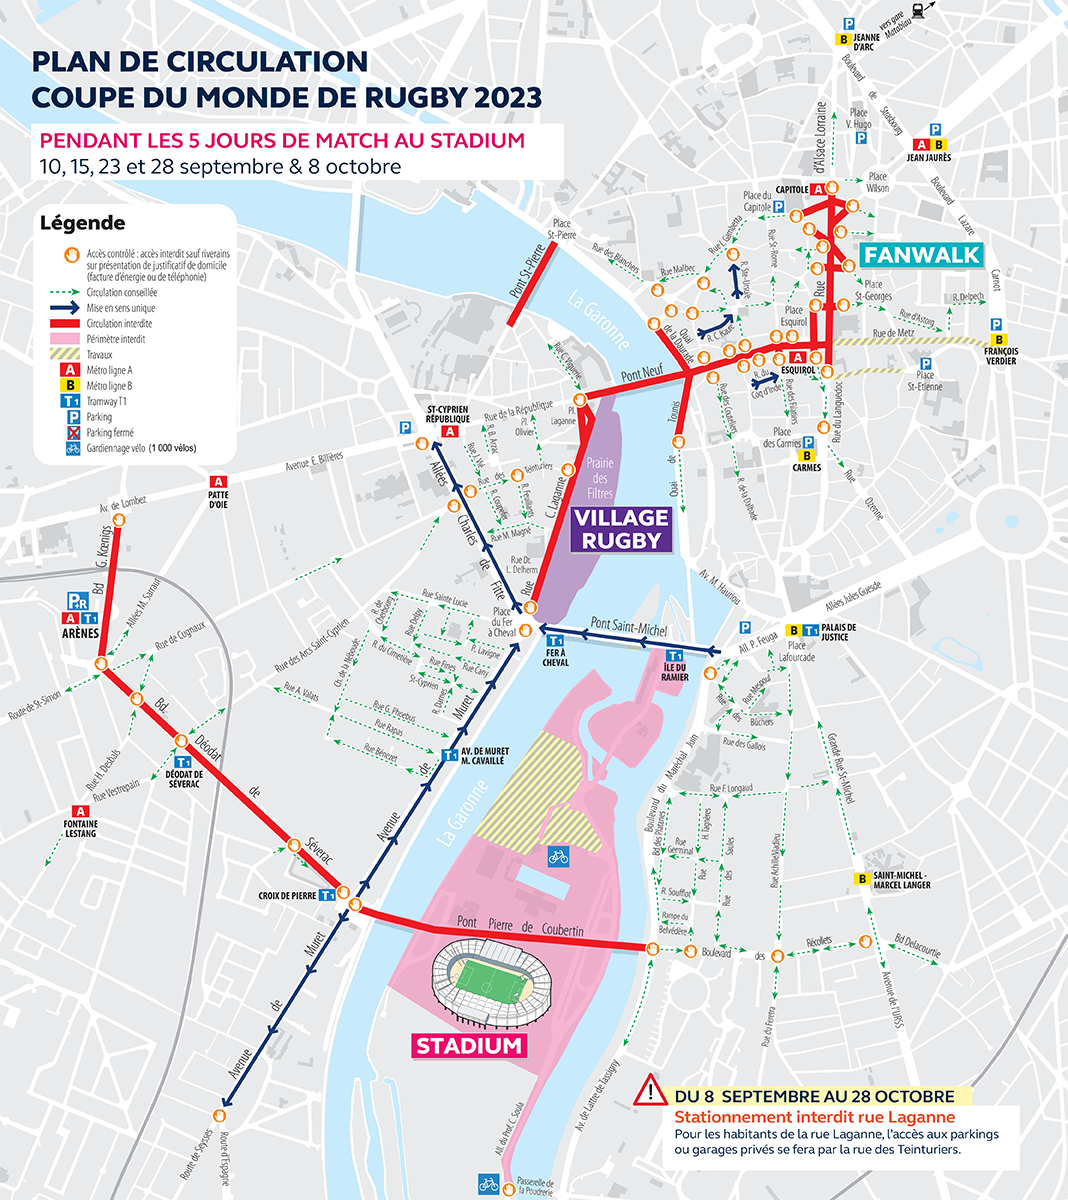 Plan de circulation à Toulouse lors de la Coupe du Monde de Rugby 2023, pendant les 5 jours de match au Stadium (10, 15, 23 et 28 septembre, et 8 octobre) dans les secteurs concernés (Stadium sur l'île du Ramier, Village Rugby à la Prairie des Filtres, et Fan Walk en centre-ville).